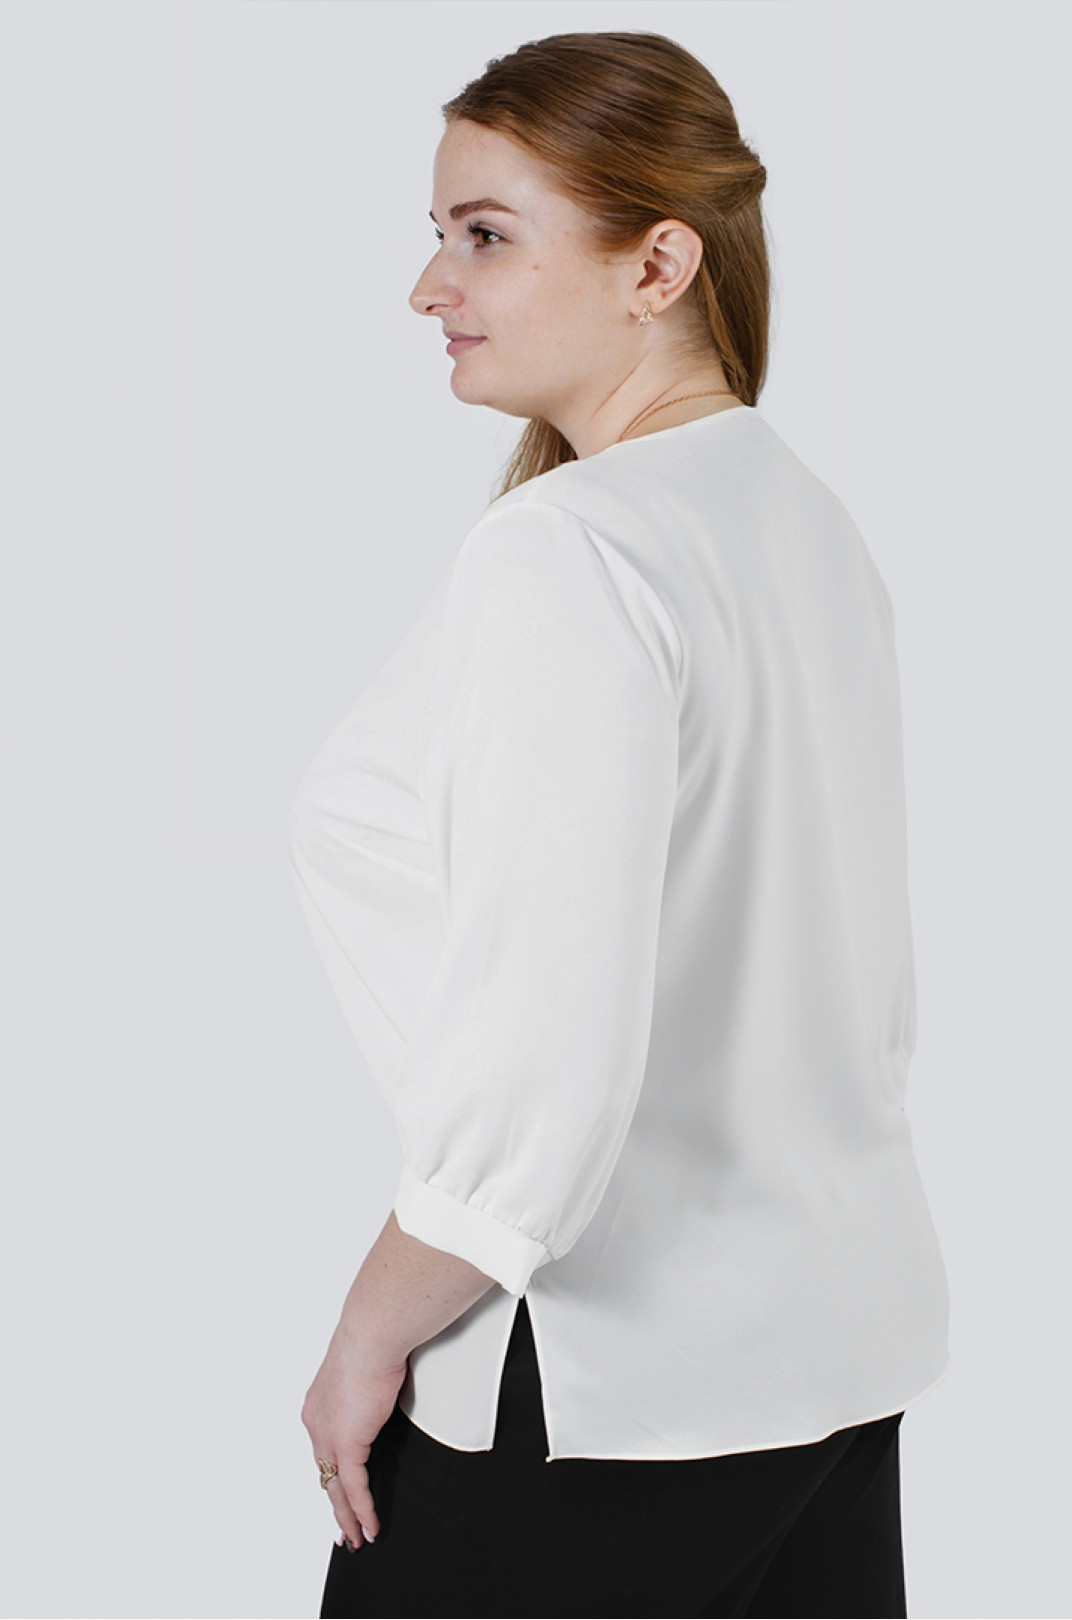 Блуза белая в стиле гюйс батал